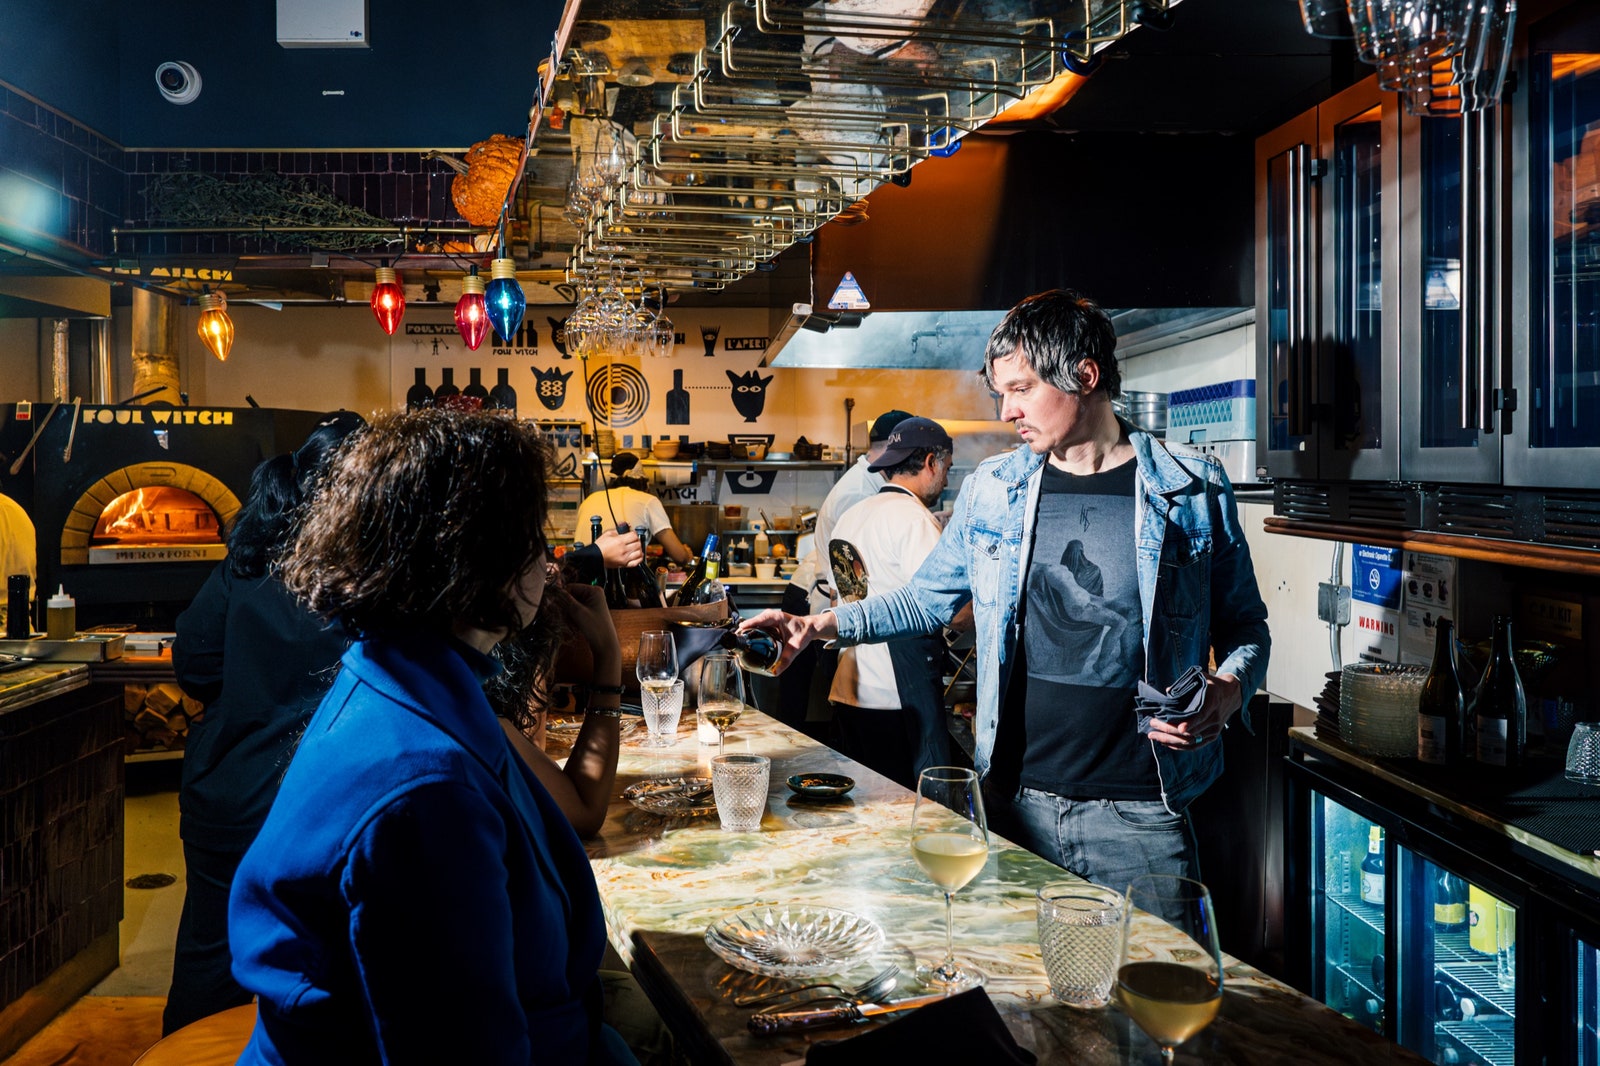 Eine Person serviert den Gästen Wein an einer Bar, im Hintergrund ist eine offene Küche zu sehen.